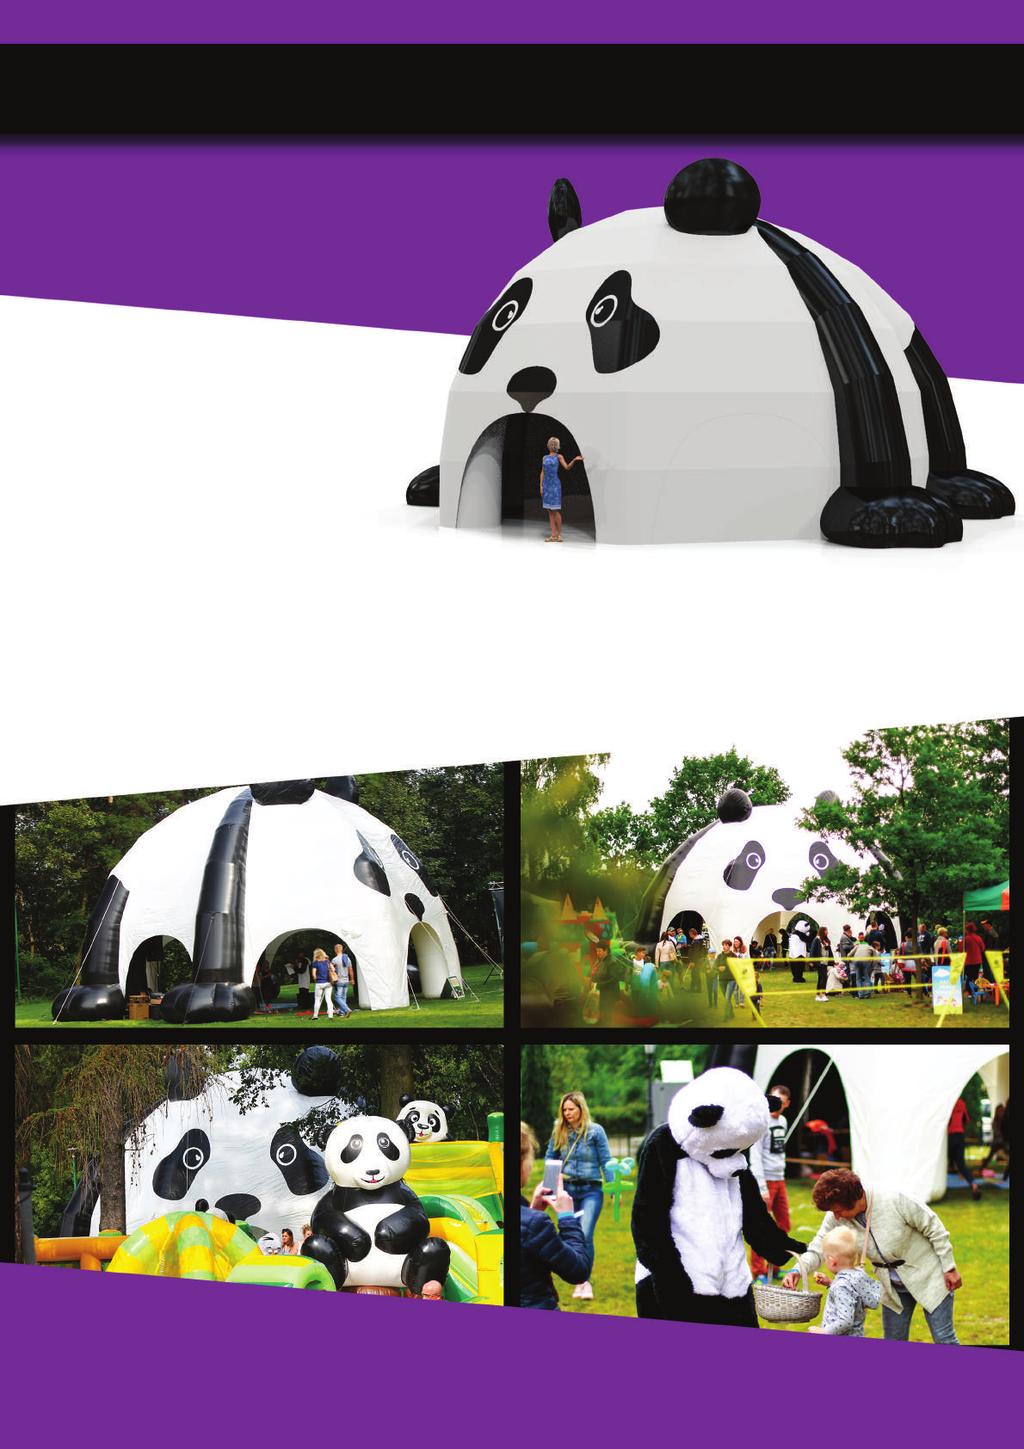 NAMIOT PANDA Wielofunkcyjny gigantyczny namiot Panda, będący centrum dobrej zabawy. Na powierzchni prawie 120 metrów kwadratowych można stworzyć dowolną strefę animacyjną.